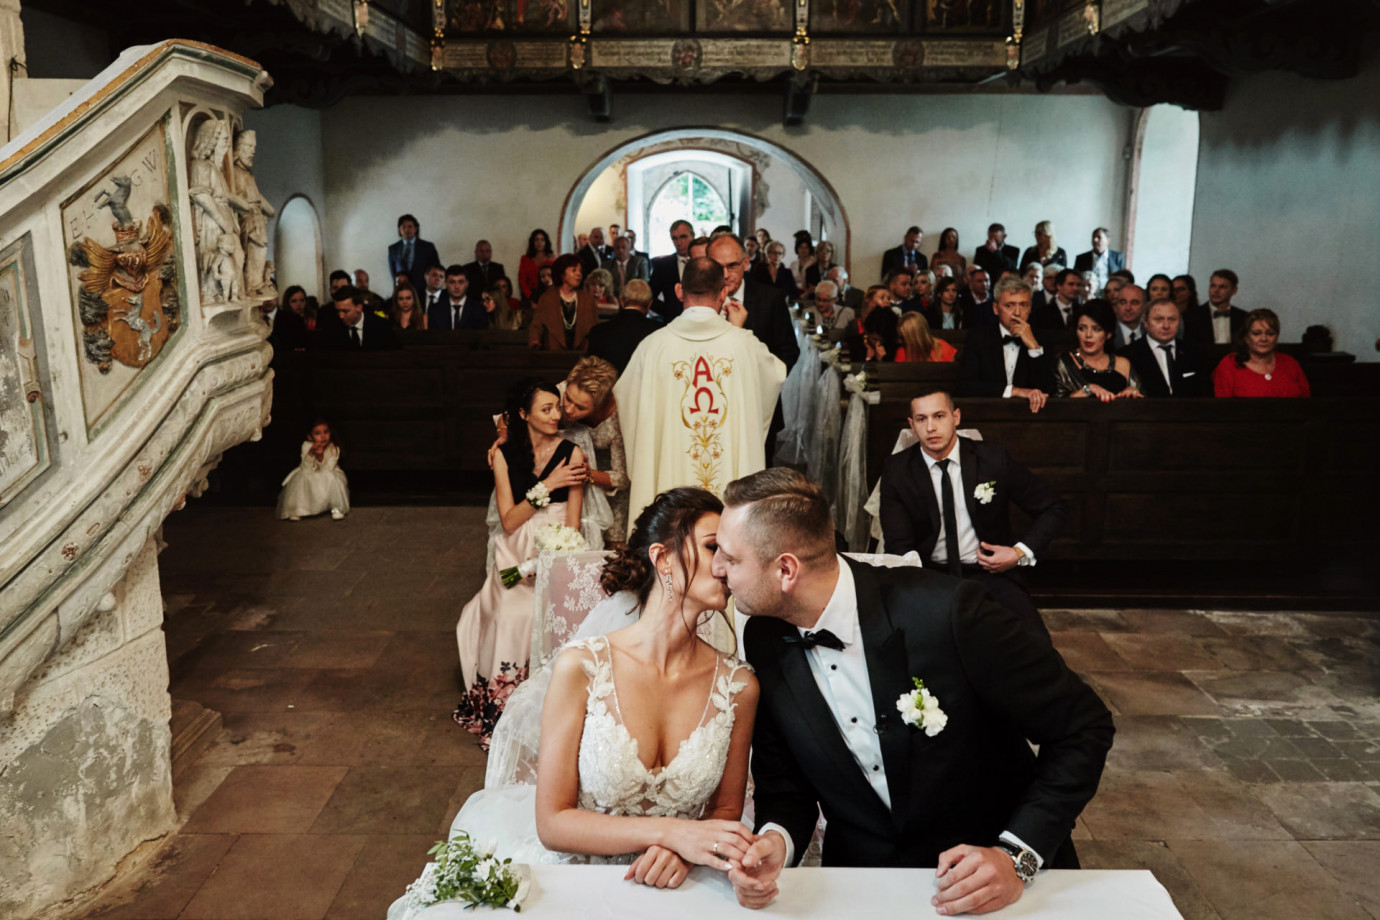 fotograf szczecin fotografia-przemyslaw-bialek portfolio zdjecia slubne inspiracje wesele plener slubny sesja slubna